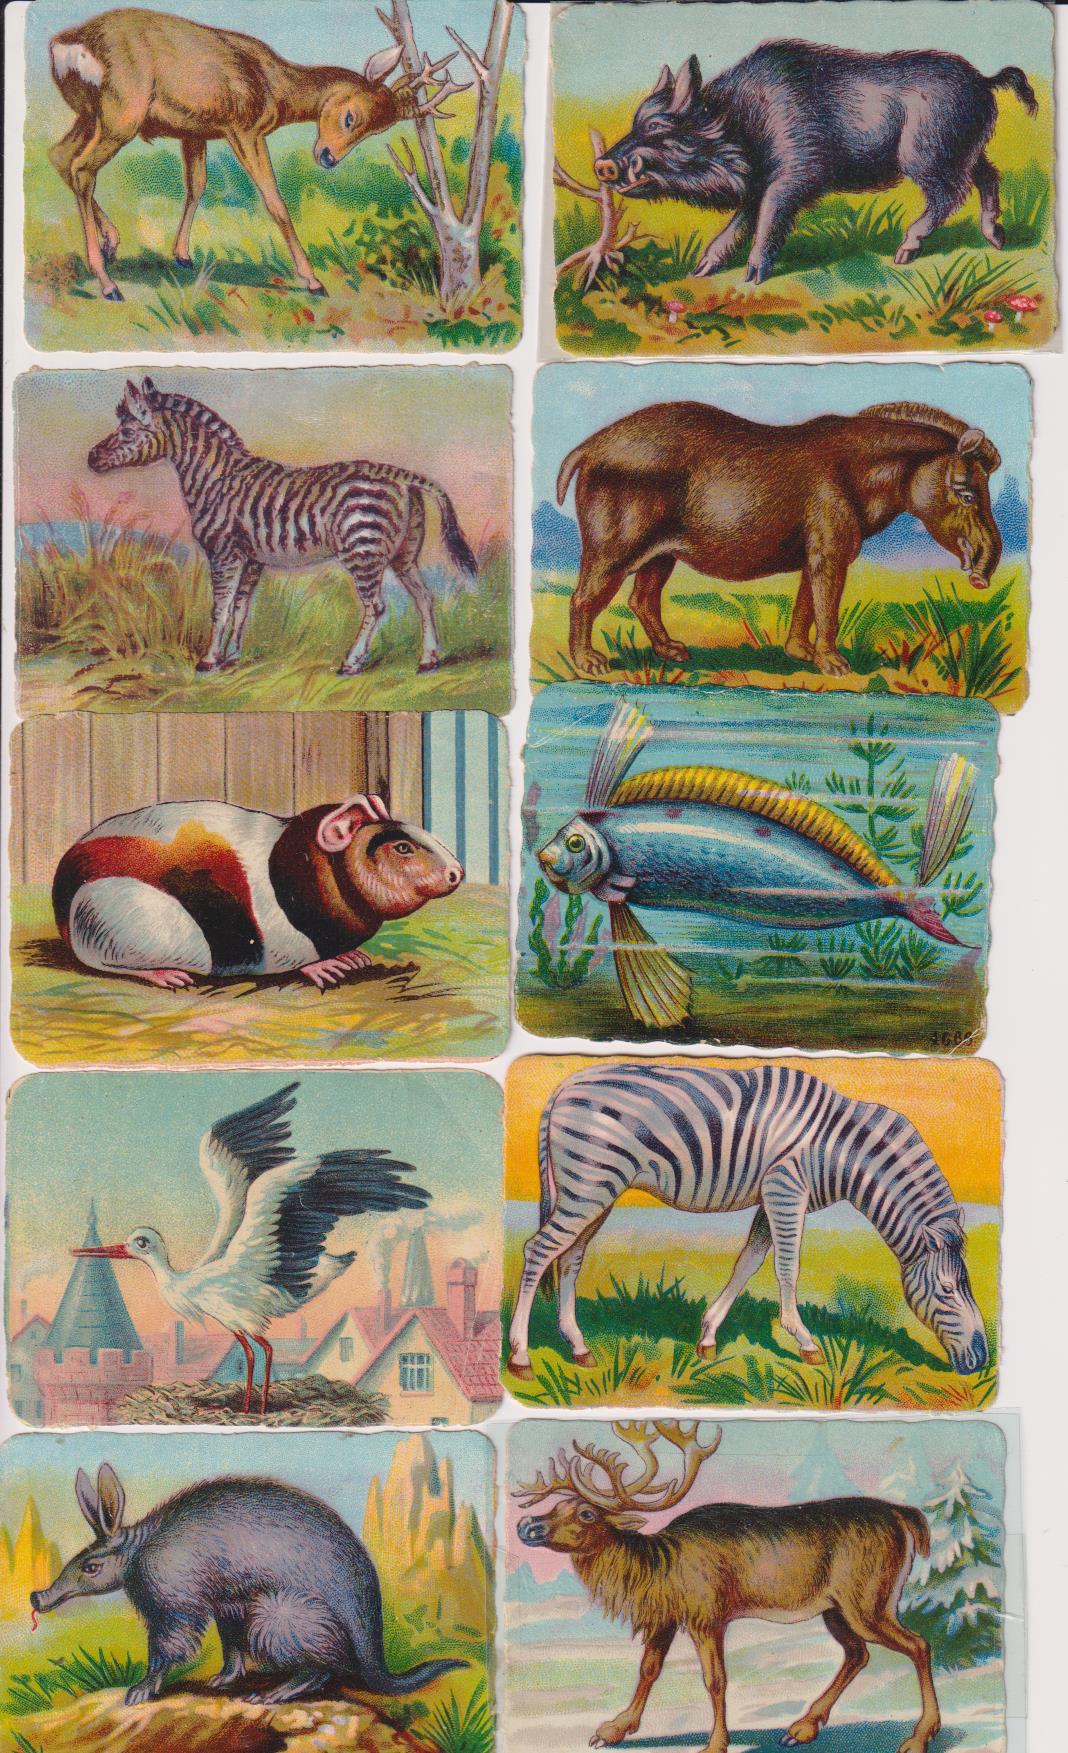 Lote de 10 Cromos Troquelados (6,5x9) Animales. Siglo XX